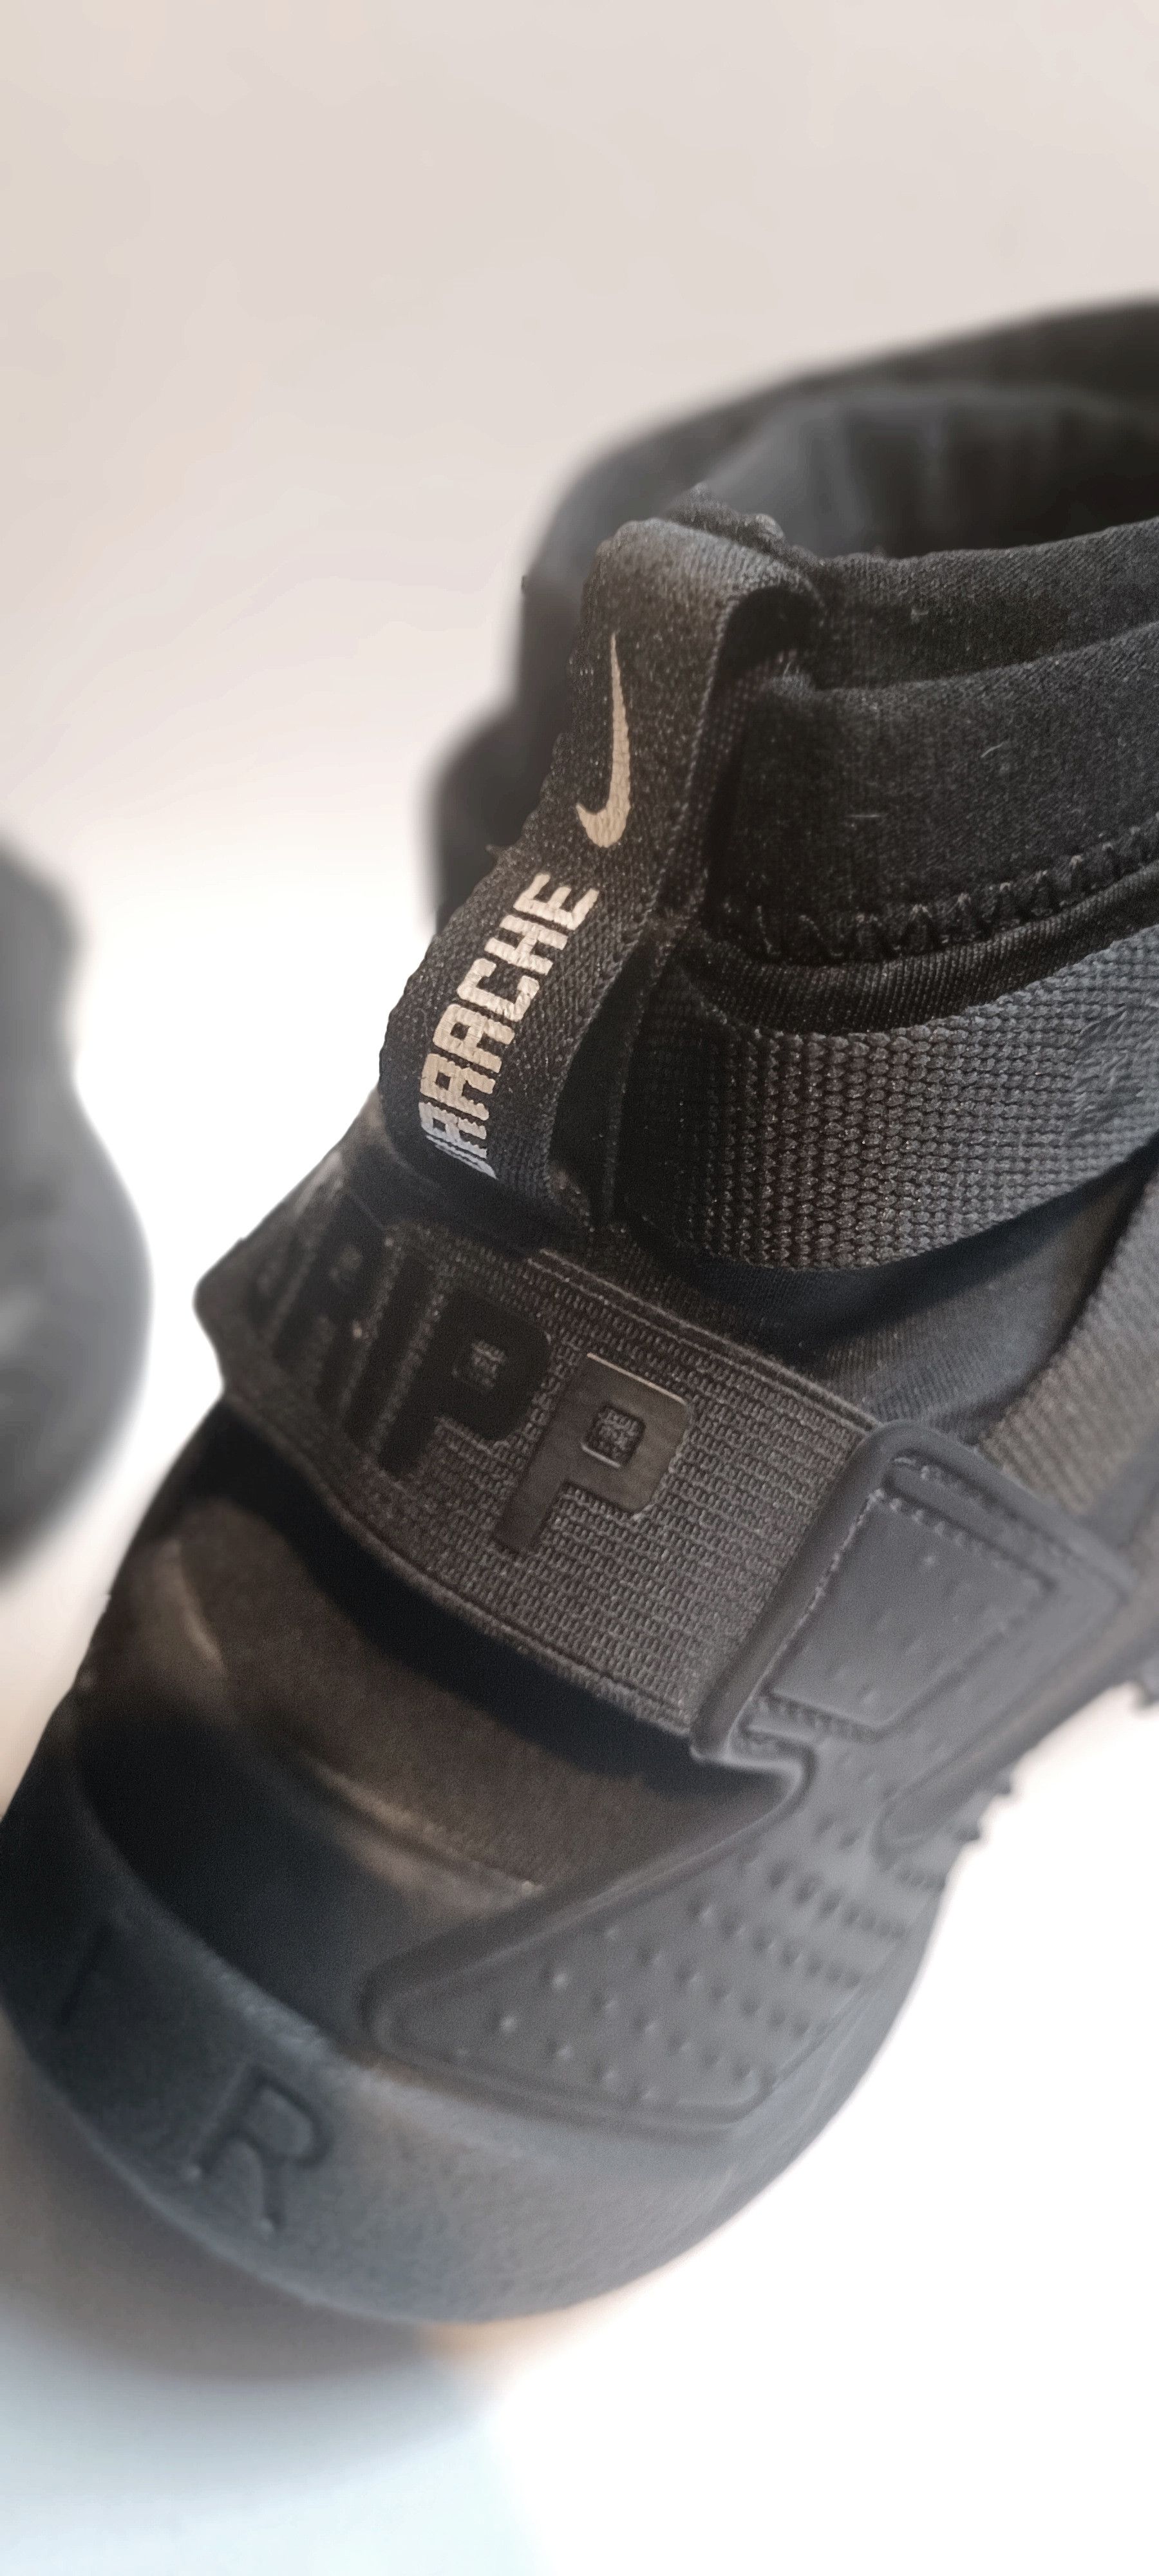 Nike Air Huarache Gripp 'Triple Black' (Rare) - 12